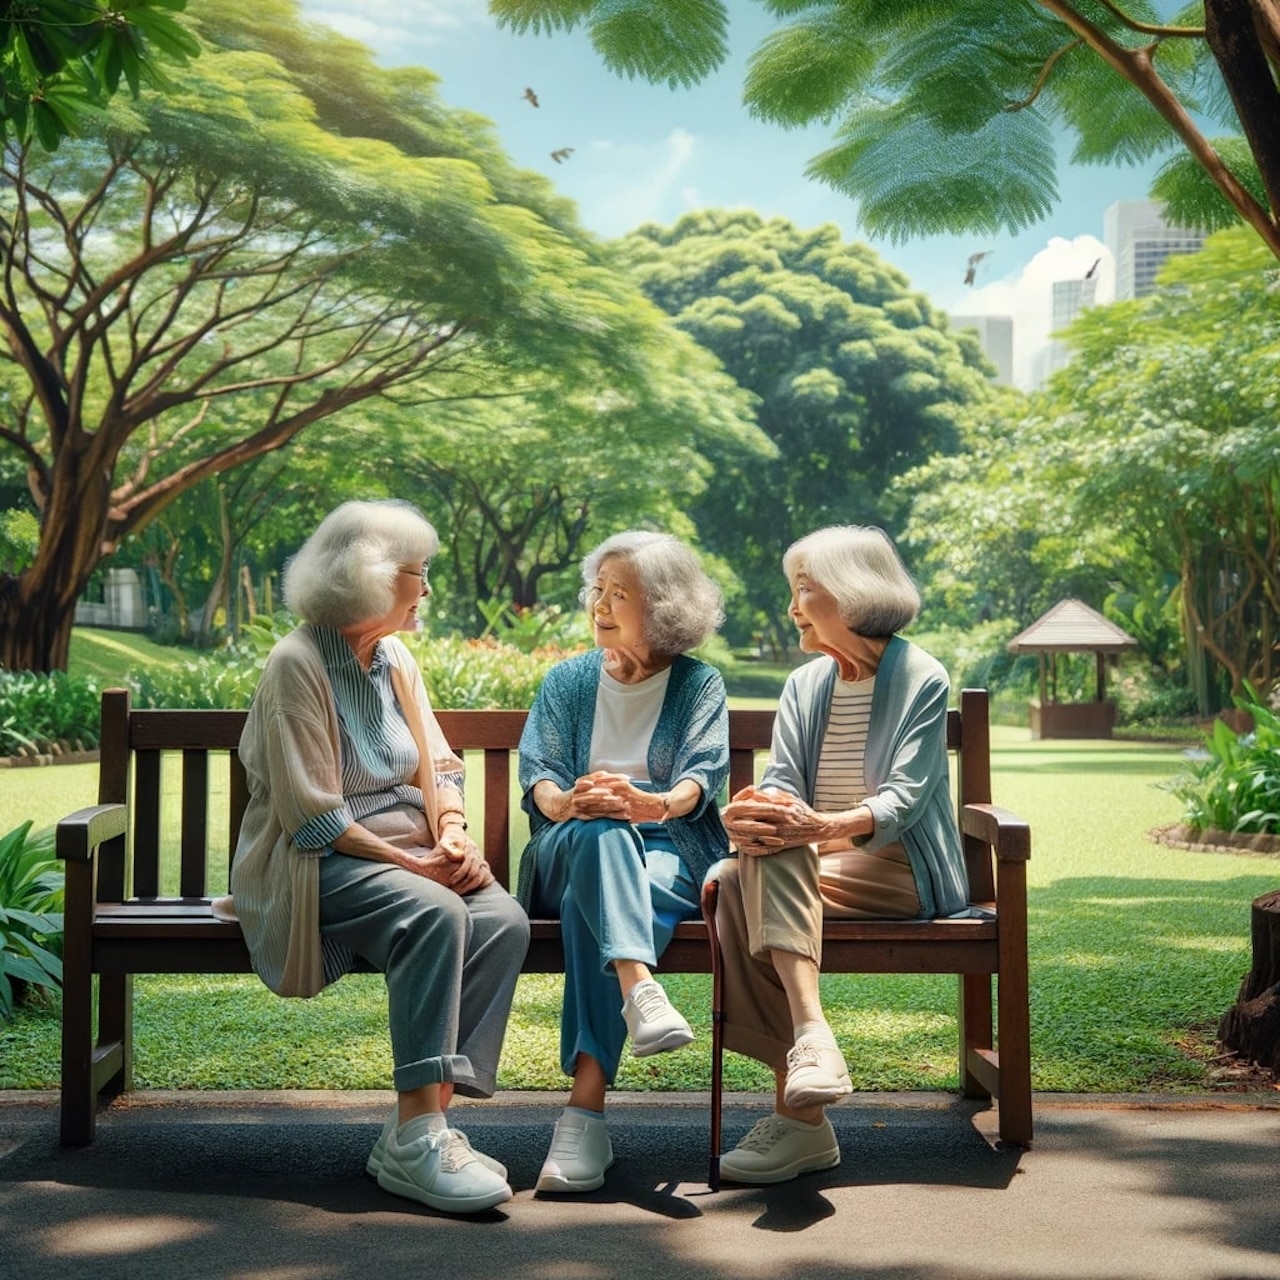 Blague du jour : Trois vieilles femmes discutent sur un banc